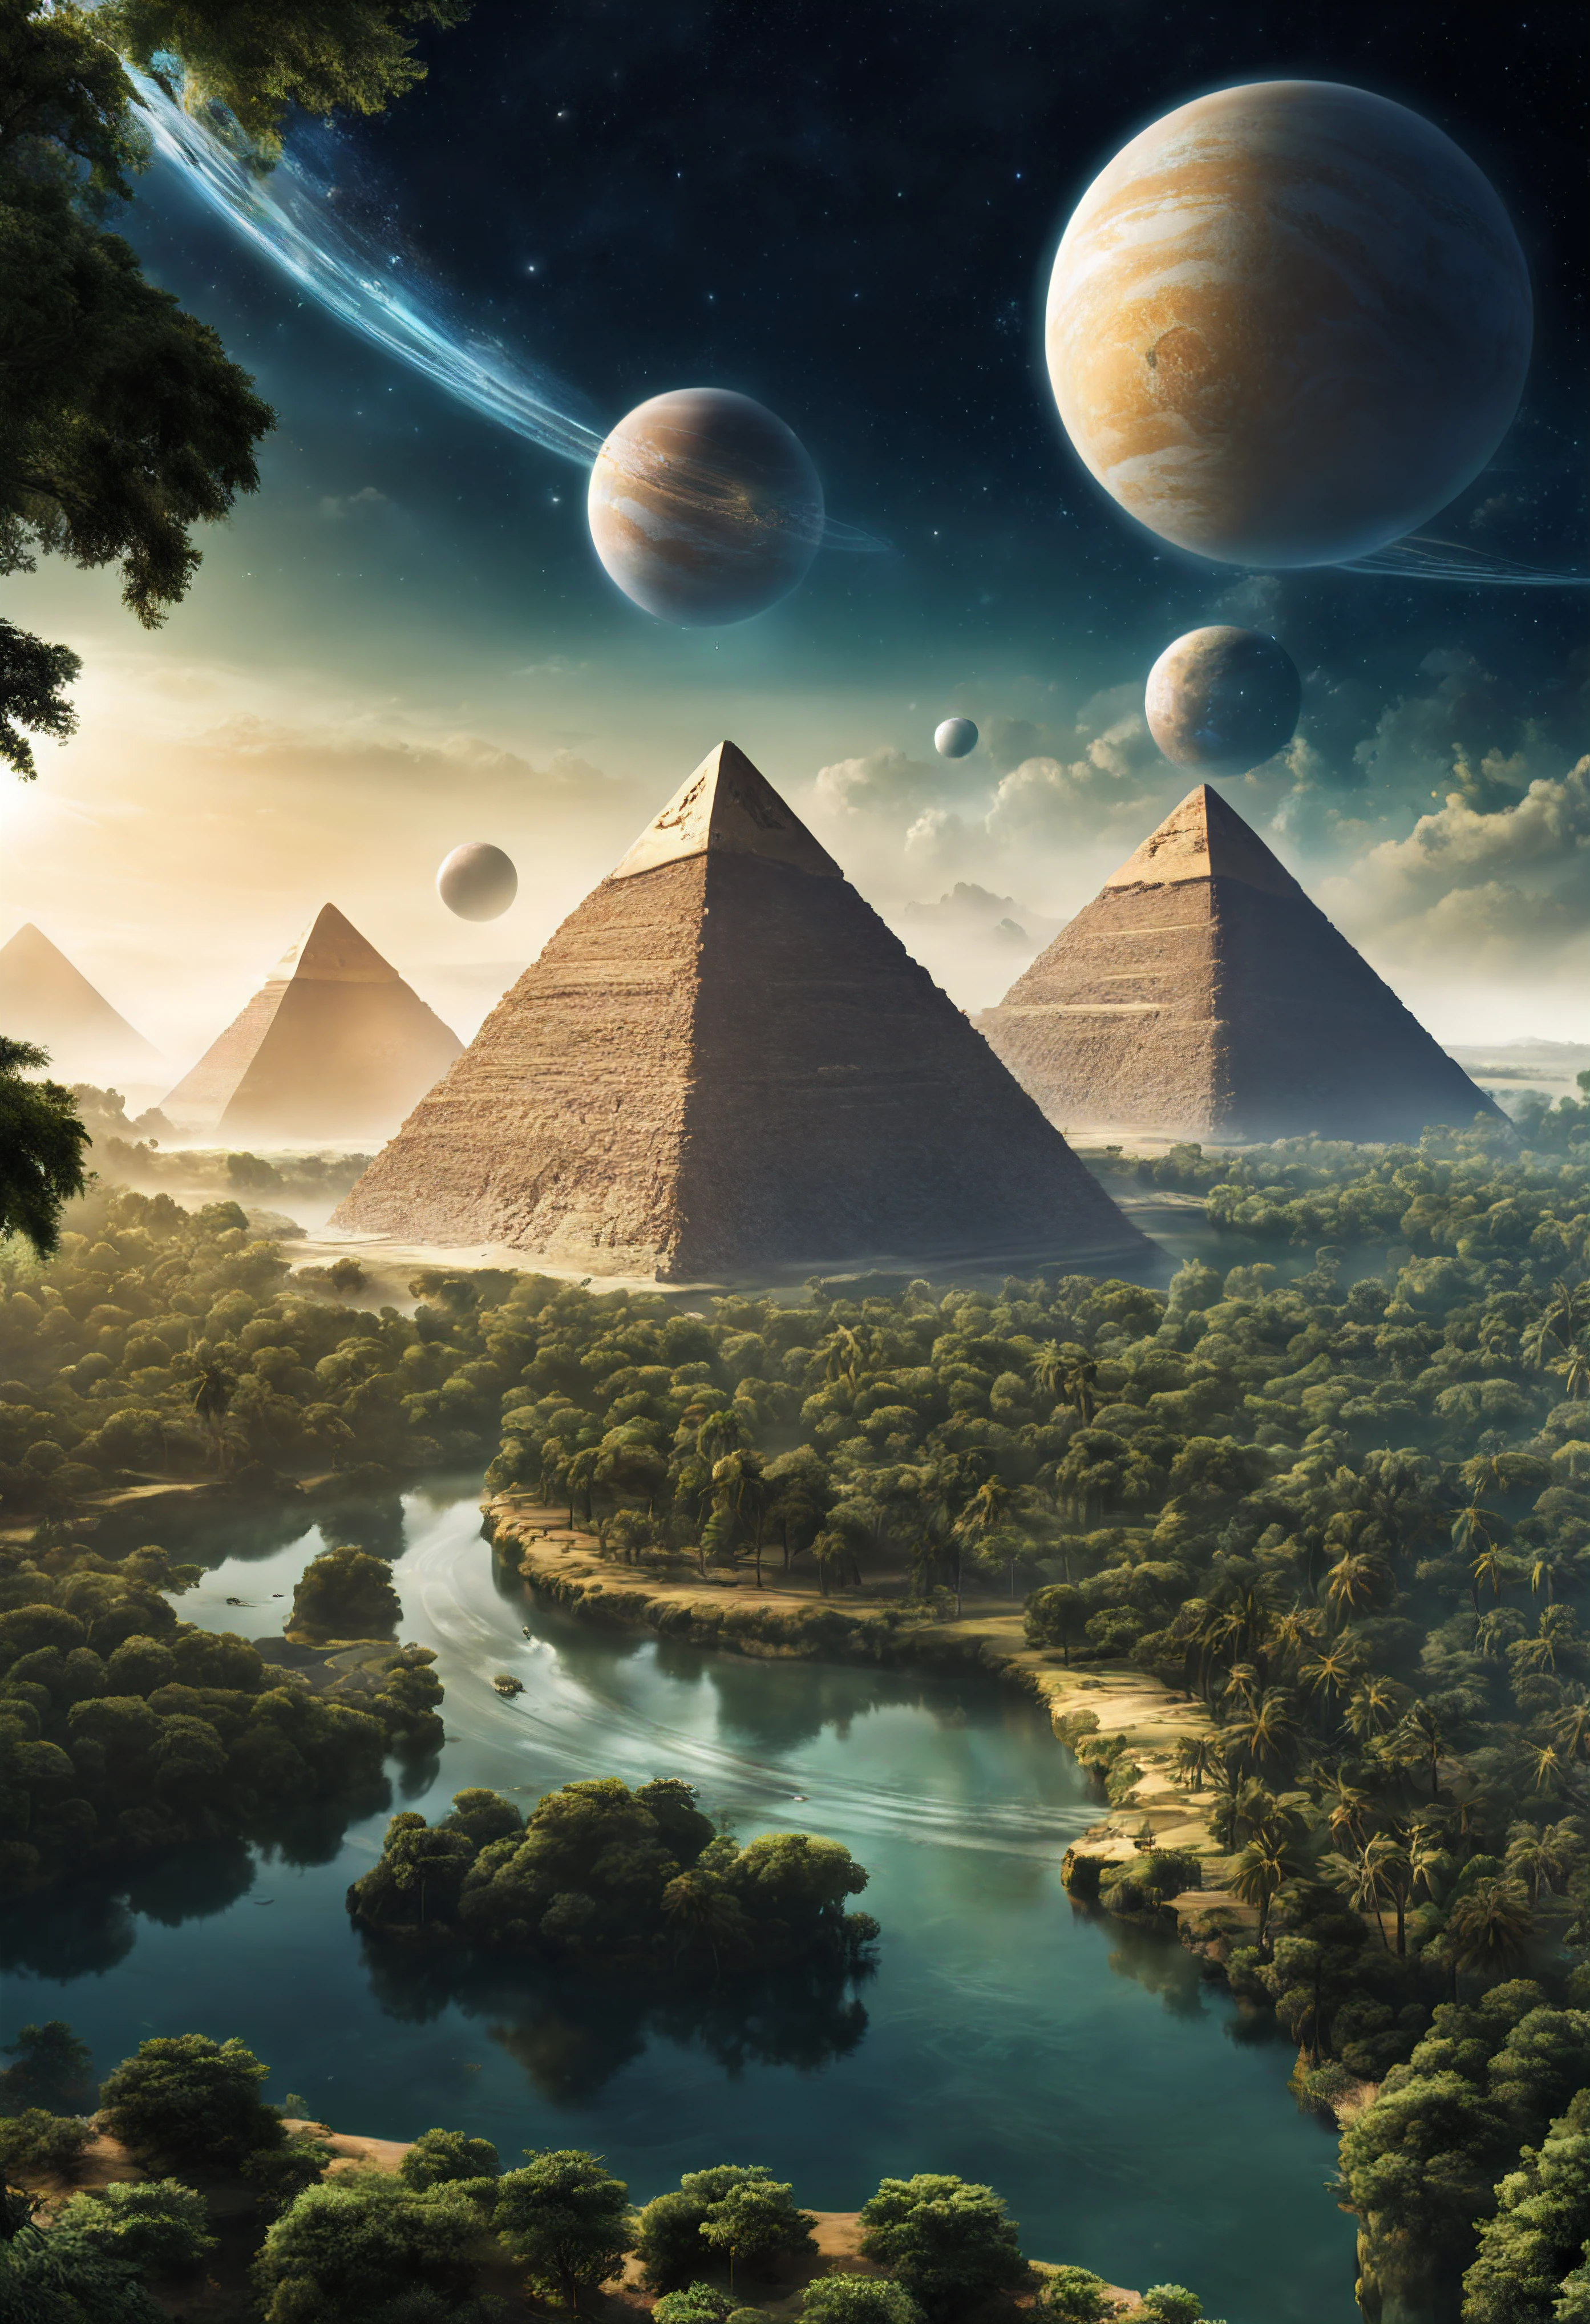 другая планета с лесами и реками, где есть пирамиды и фараоны инопланетные люди, космические корабли в виде египетских пирамид, на небе можно увидеть две планеты-спутники.